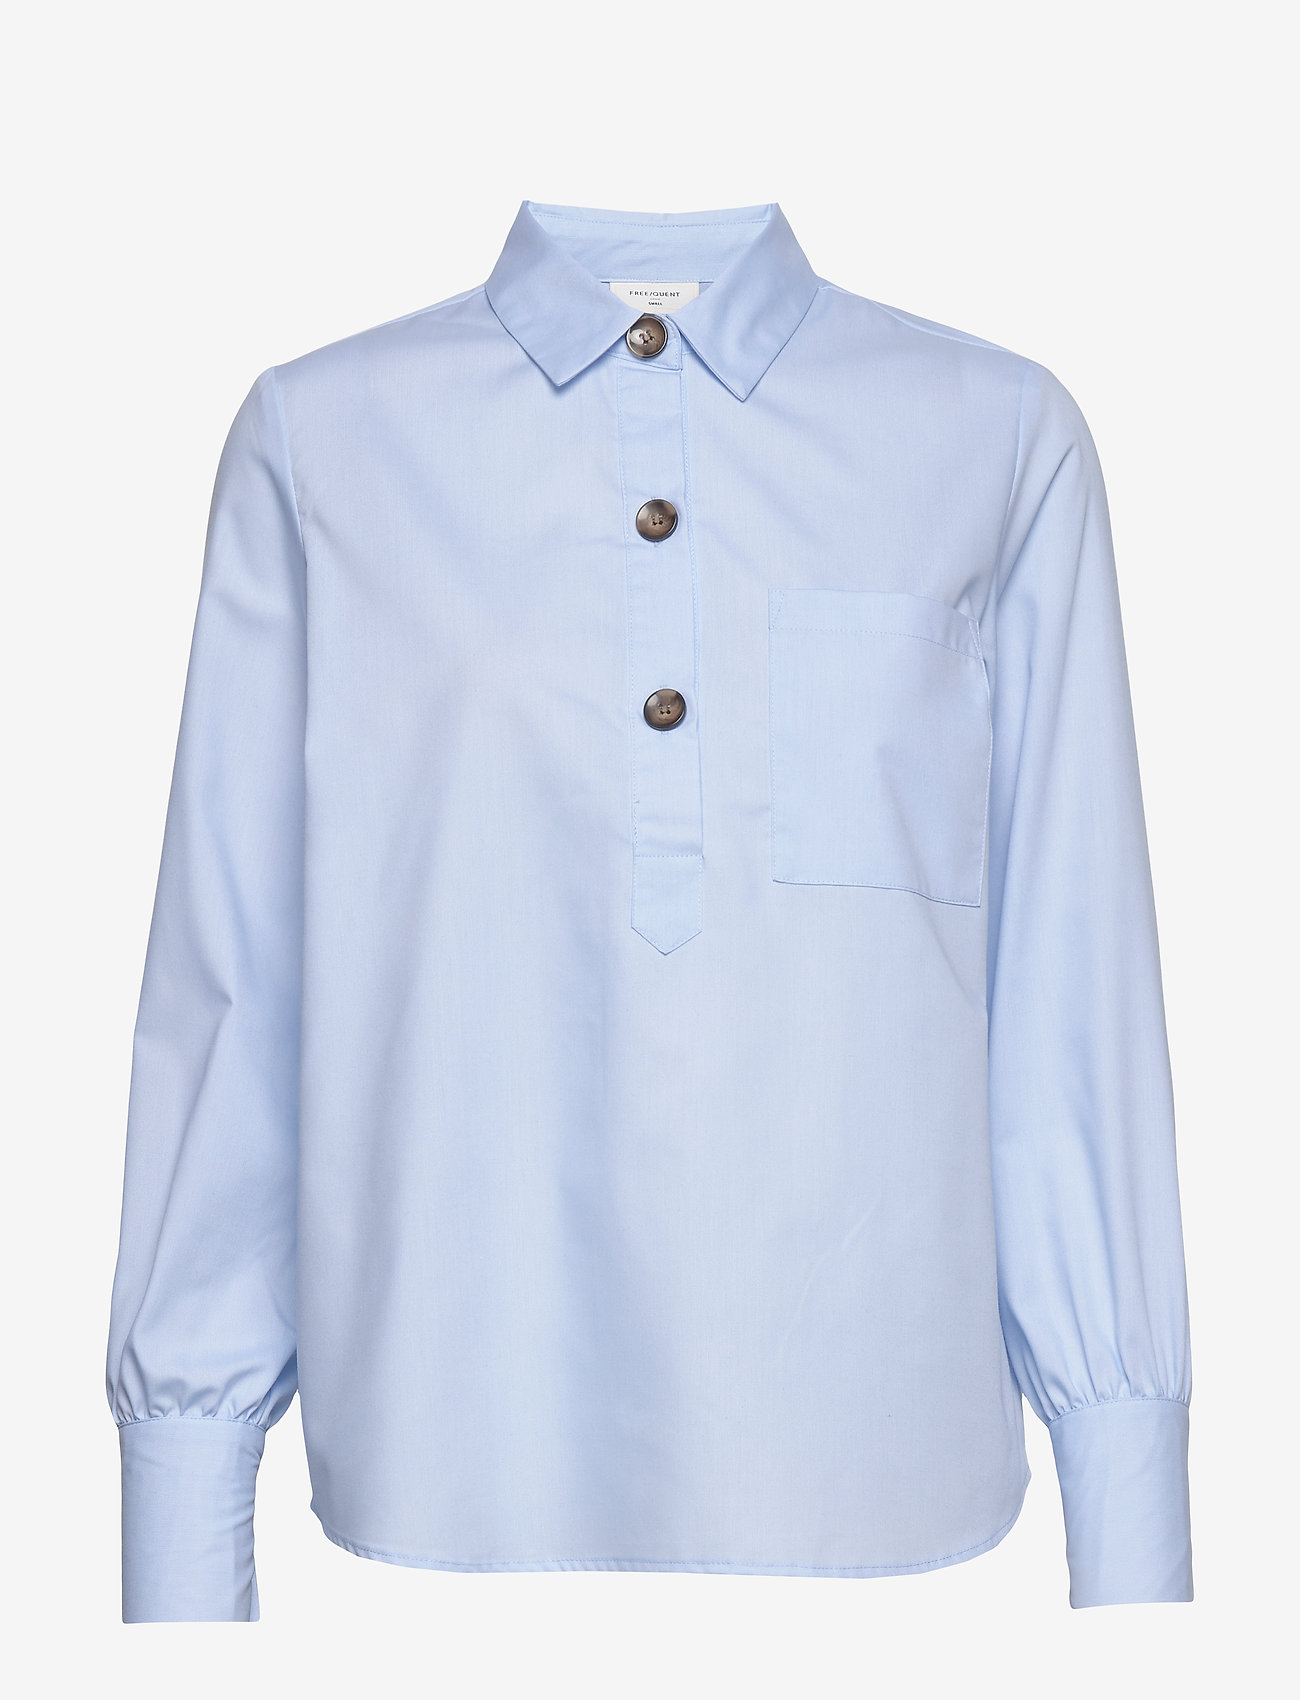 FREE/QUENT - FQFLYNN-SH - long-sleeved shirts - chambray blue 15-4030 tcx - 0